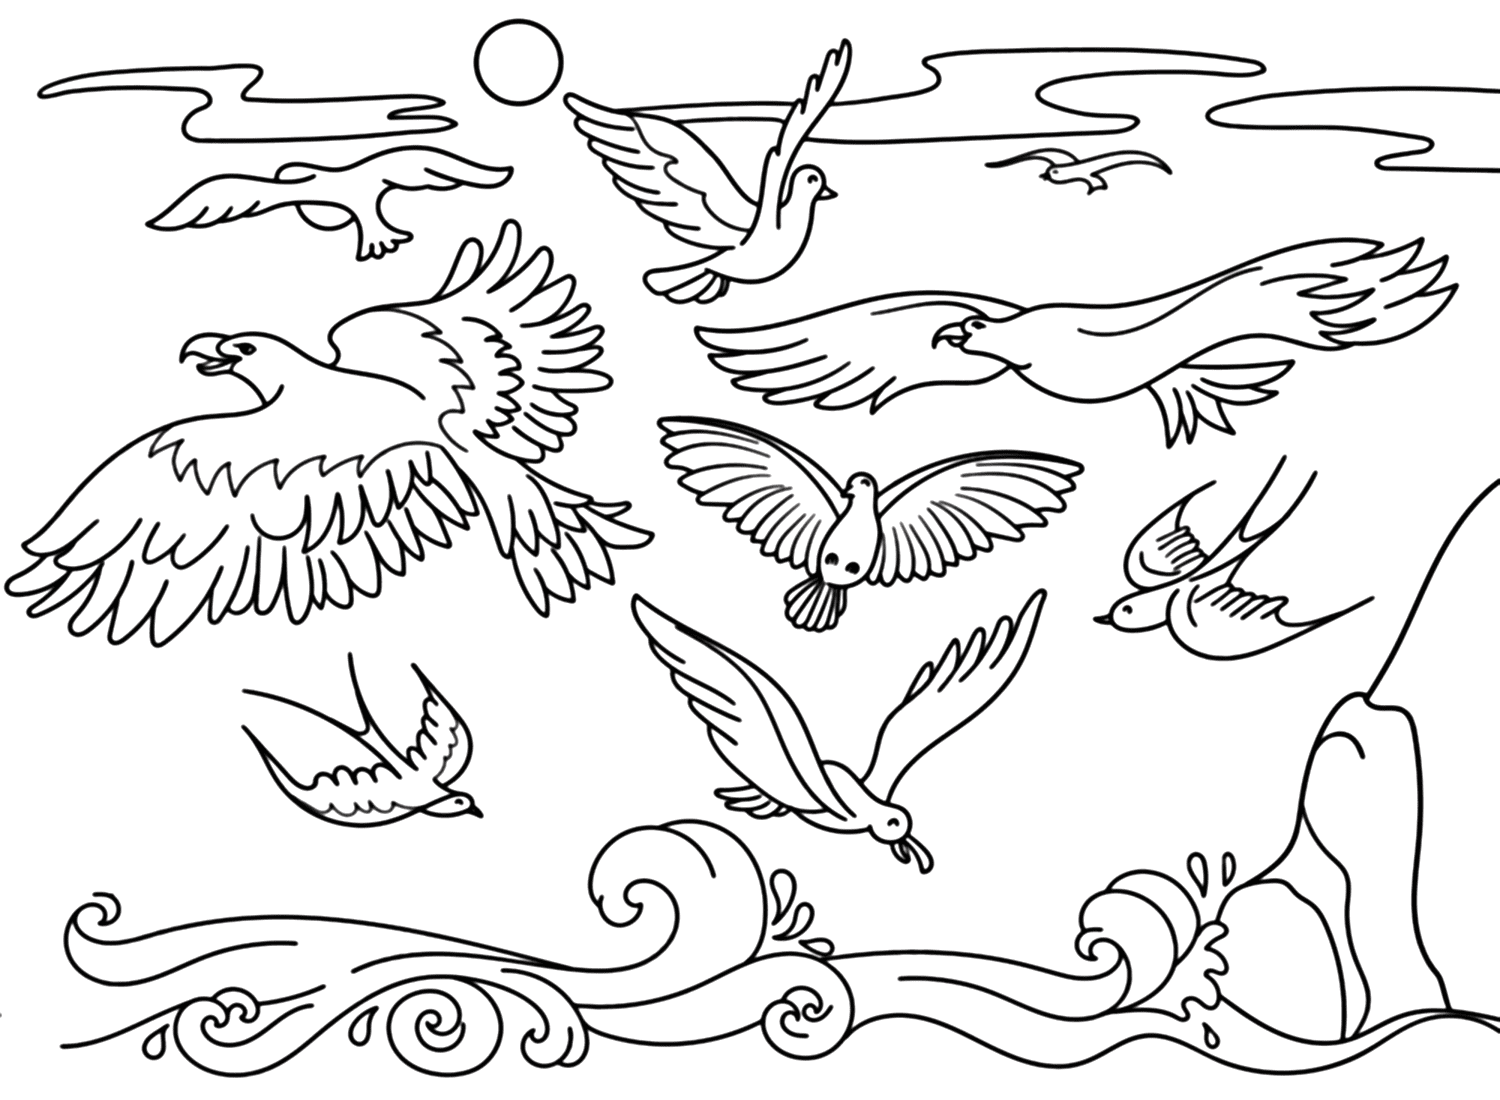 Página para colorear de golondrinas y pájaros marinos de Swallow